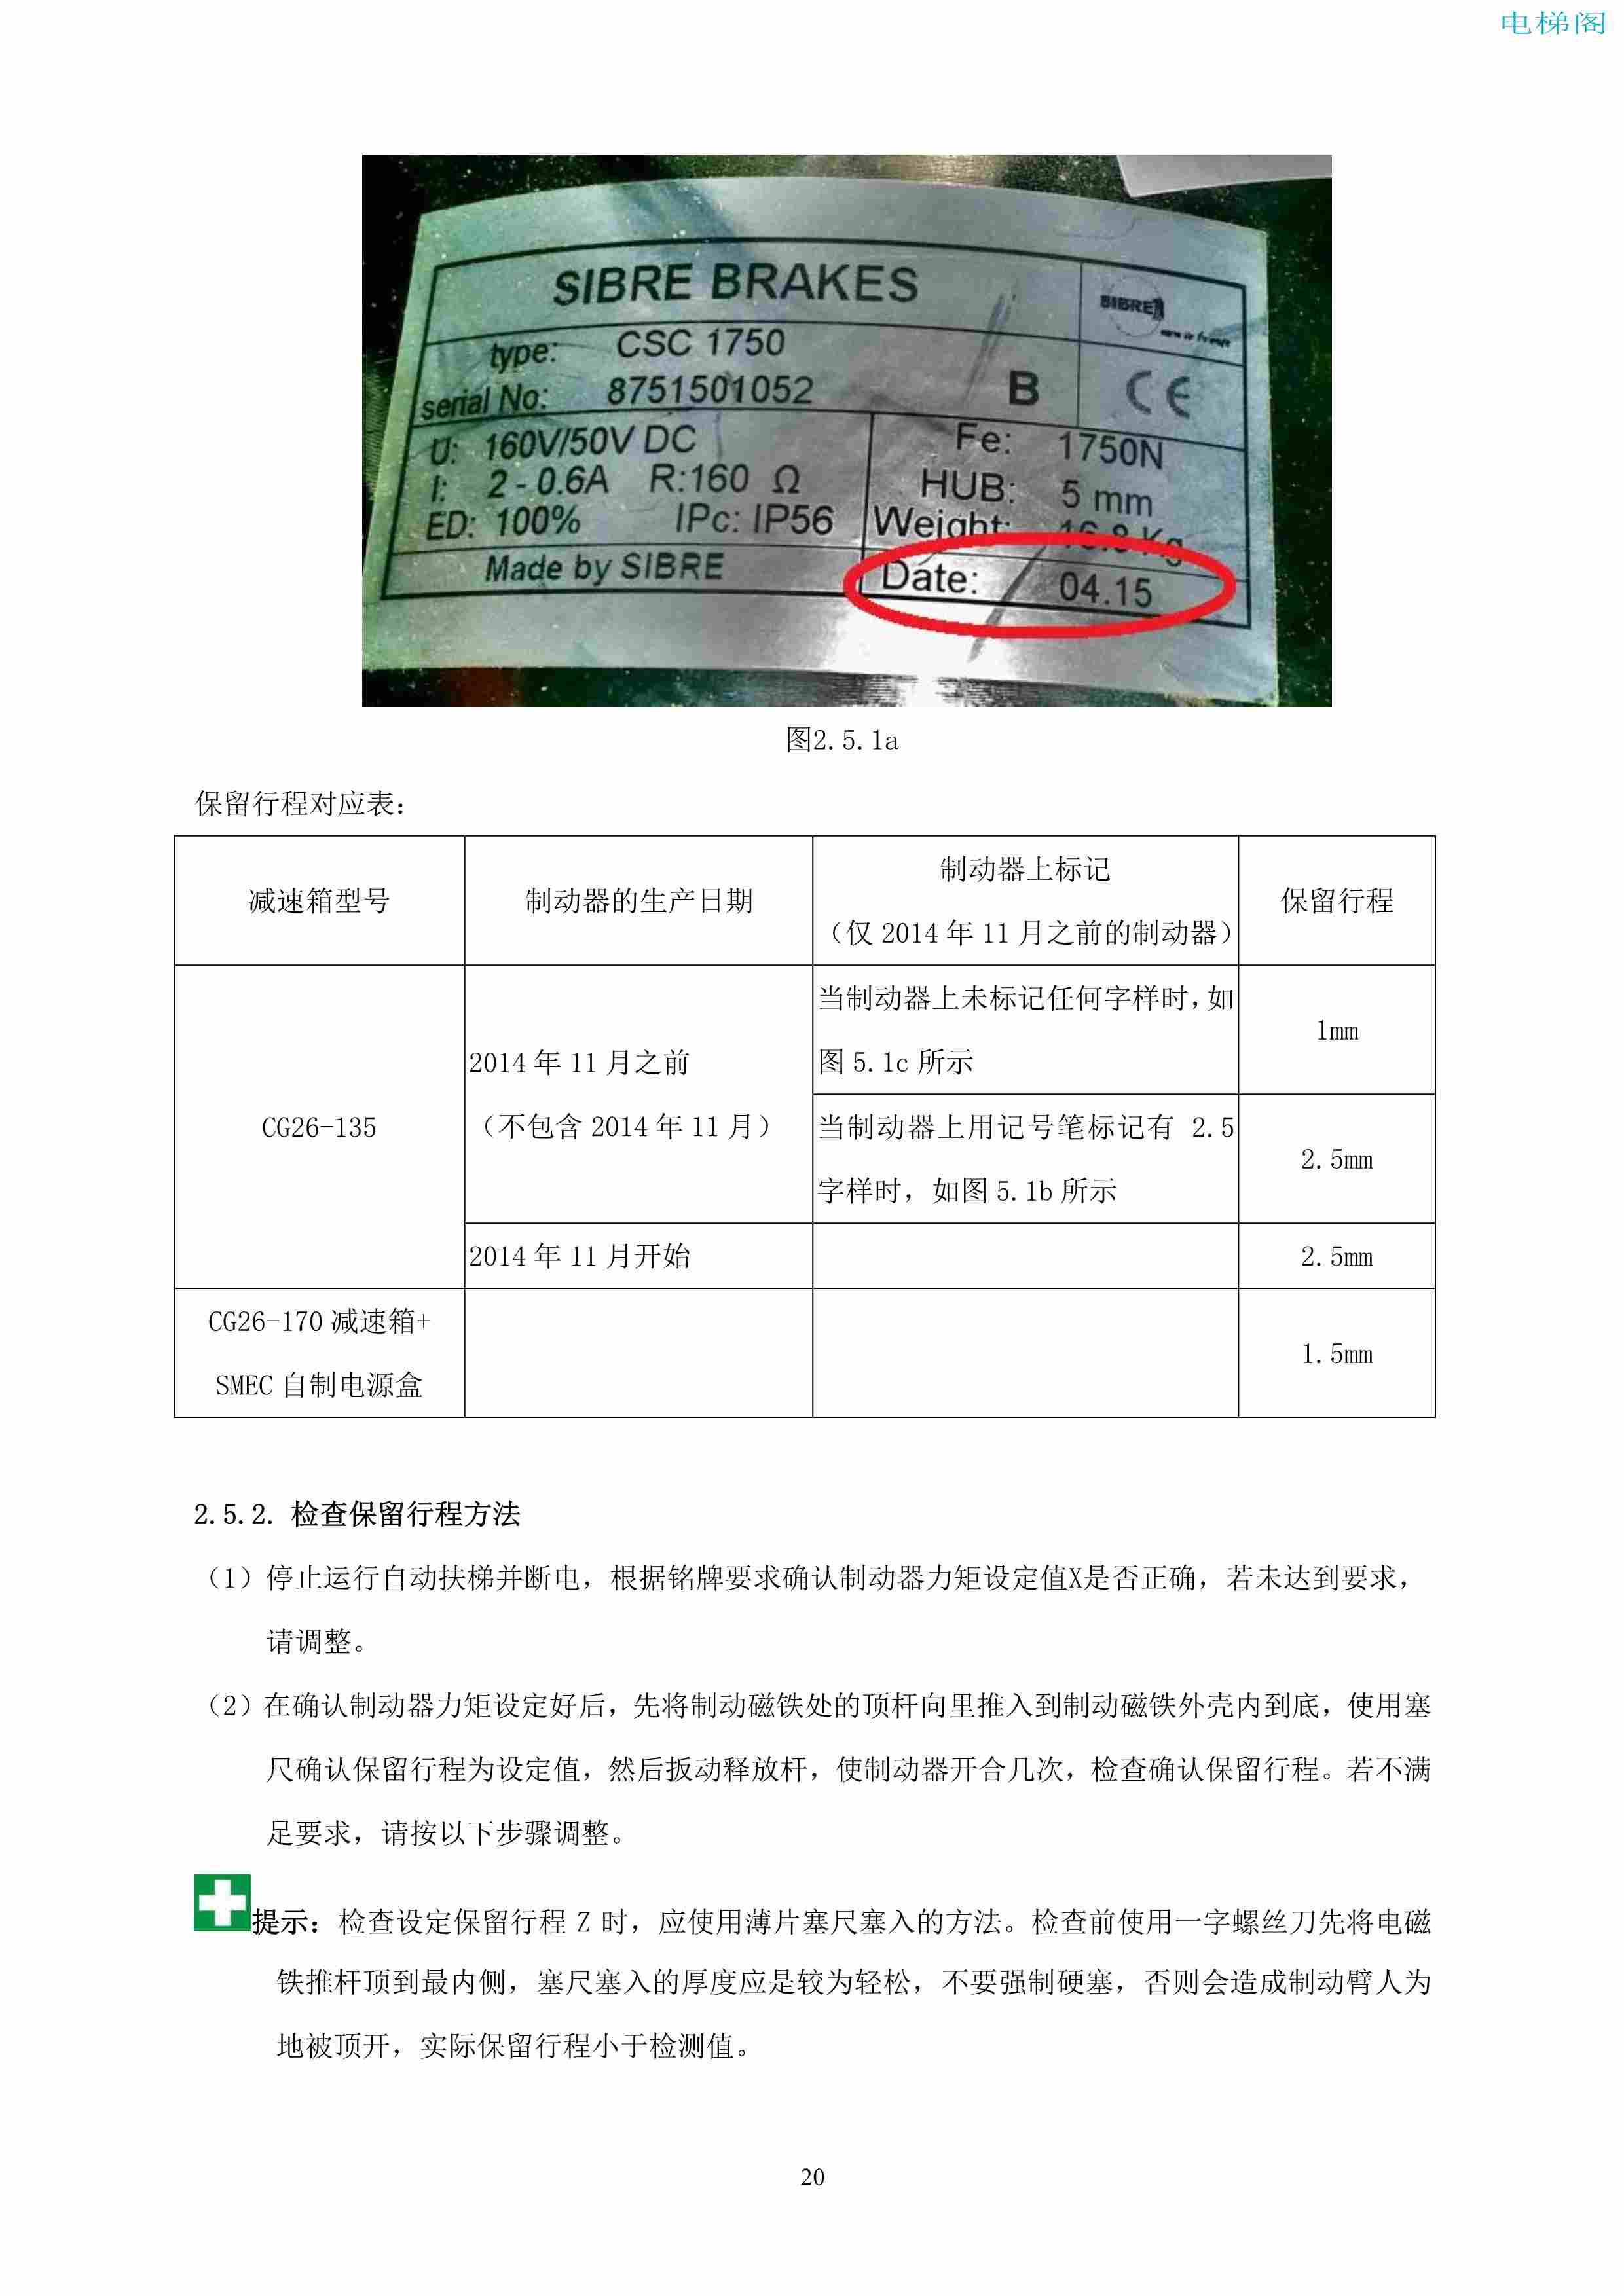 上海三菱电梯有限公司自动扶梯制动器维护作业要领汇编_21.jpg